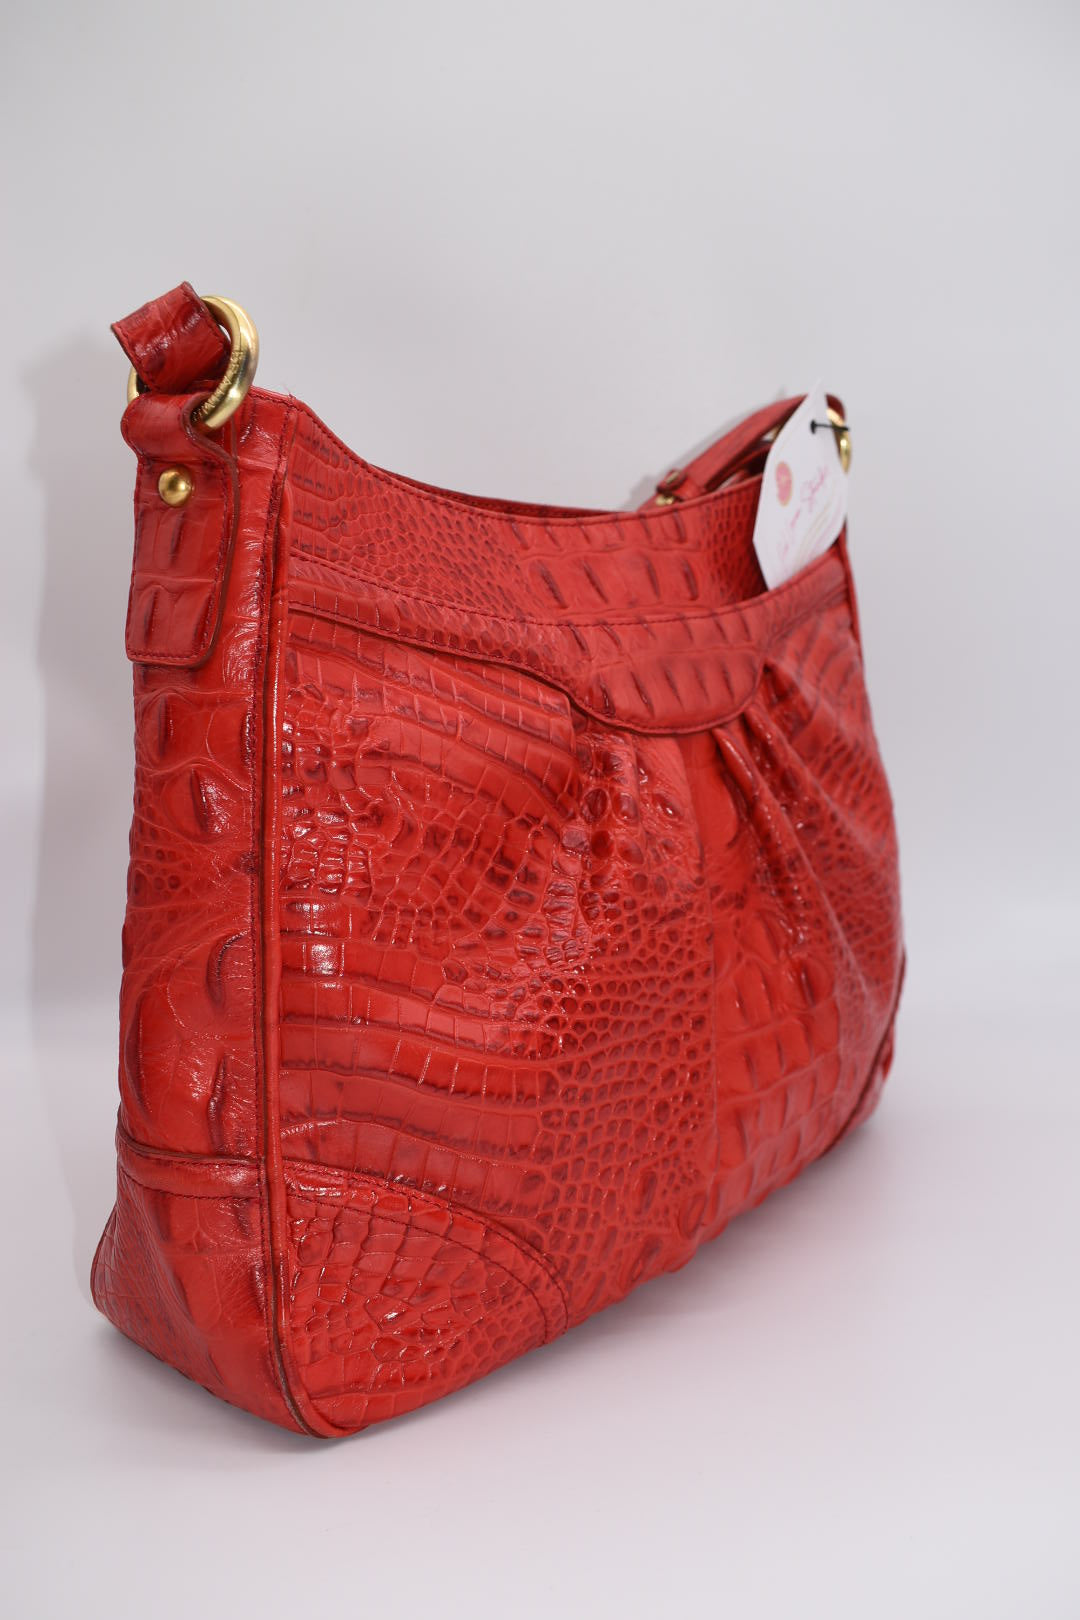 Vintage Brahmin Leather Melbourne Shoulder Bag